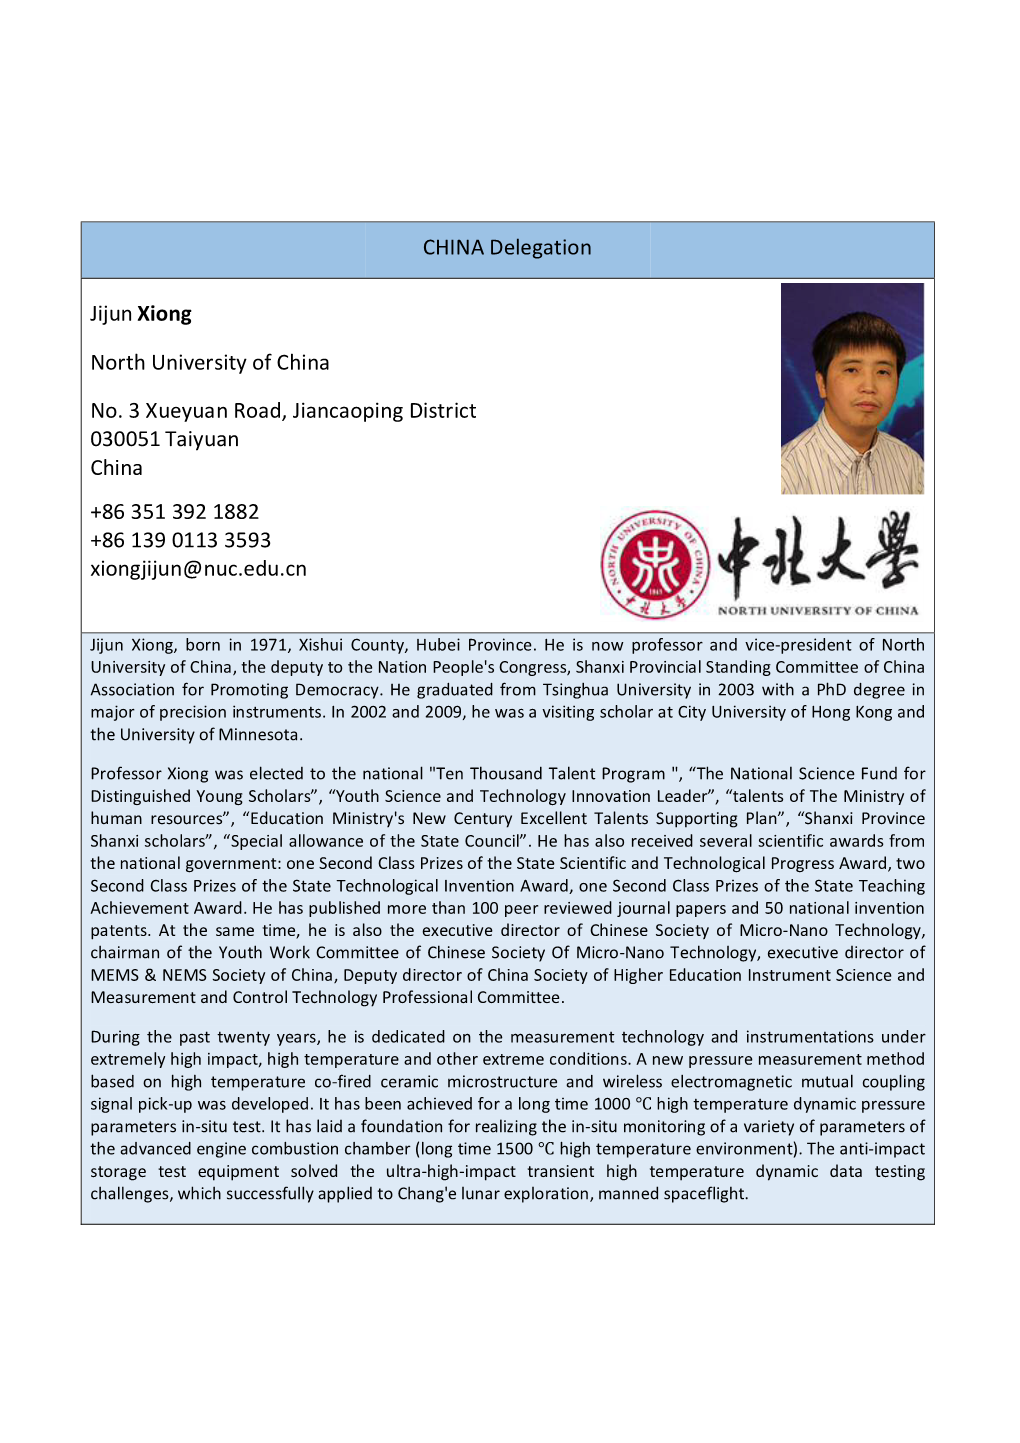 Jijun Xiong (North University of China)